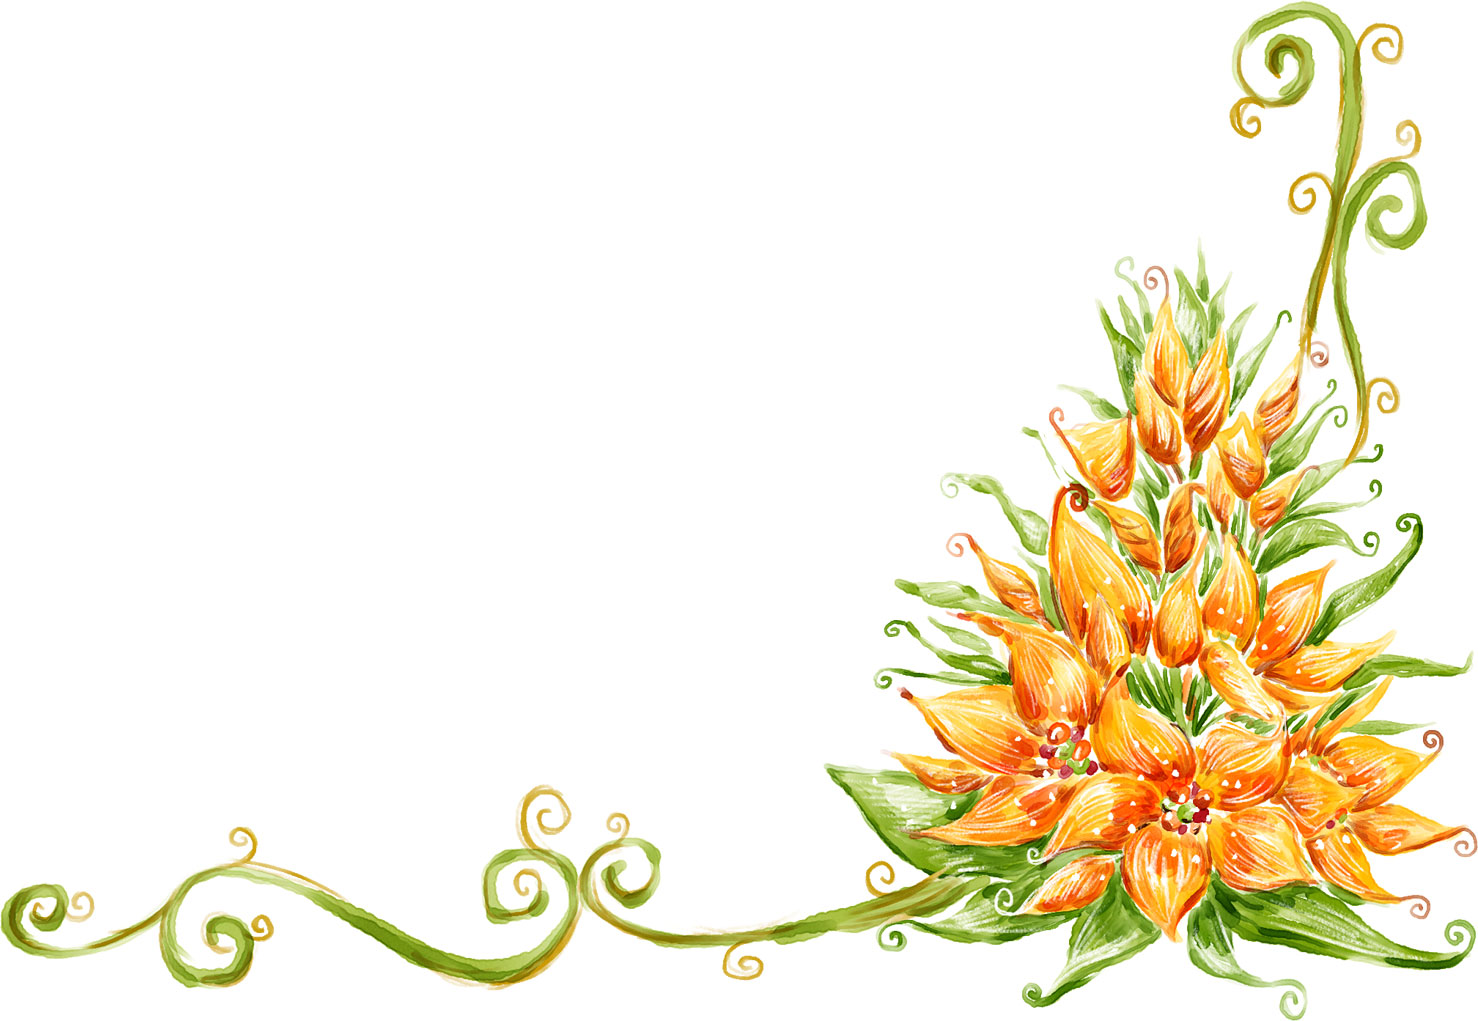 オレンジ色の花のイラスト フリー素材 No 4 手書き風コーナー